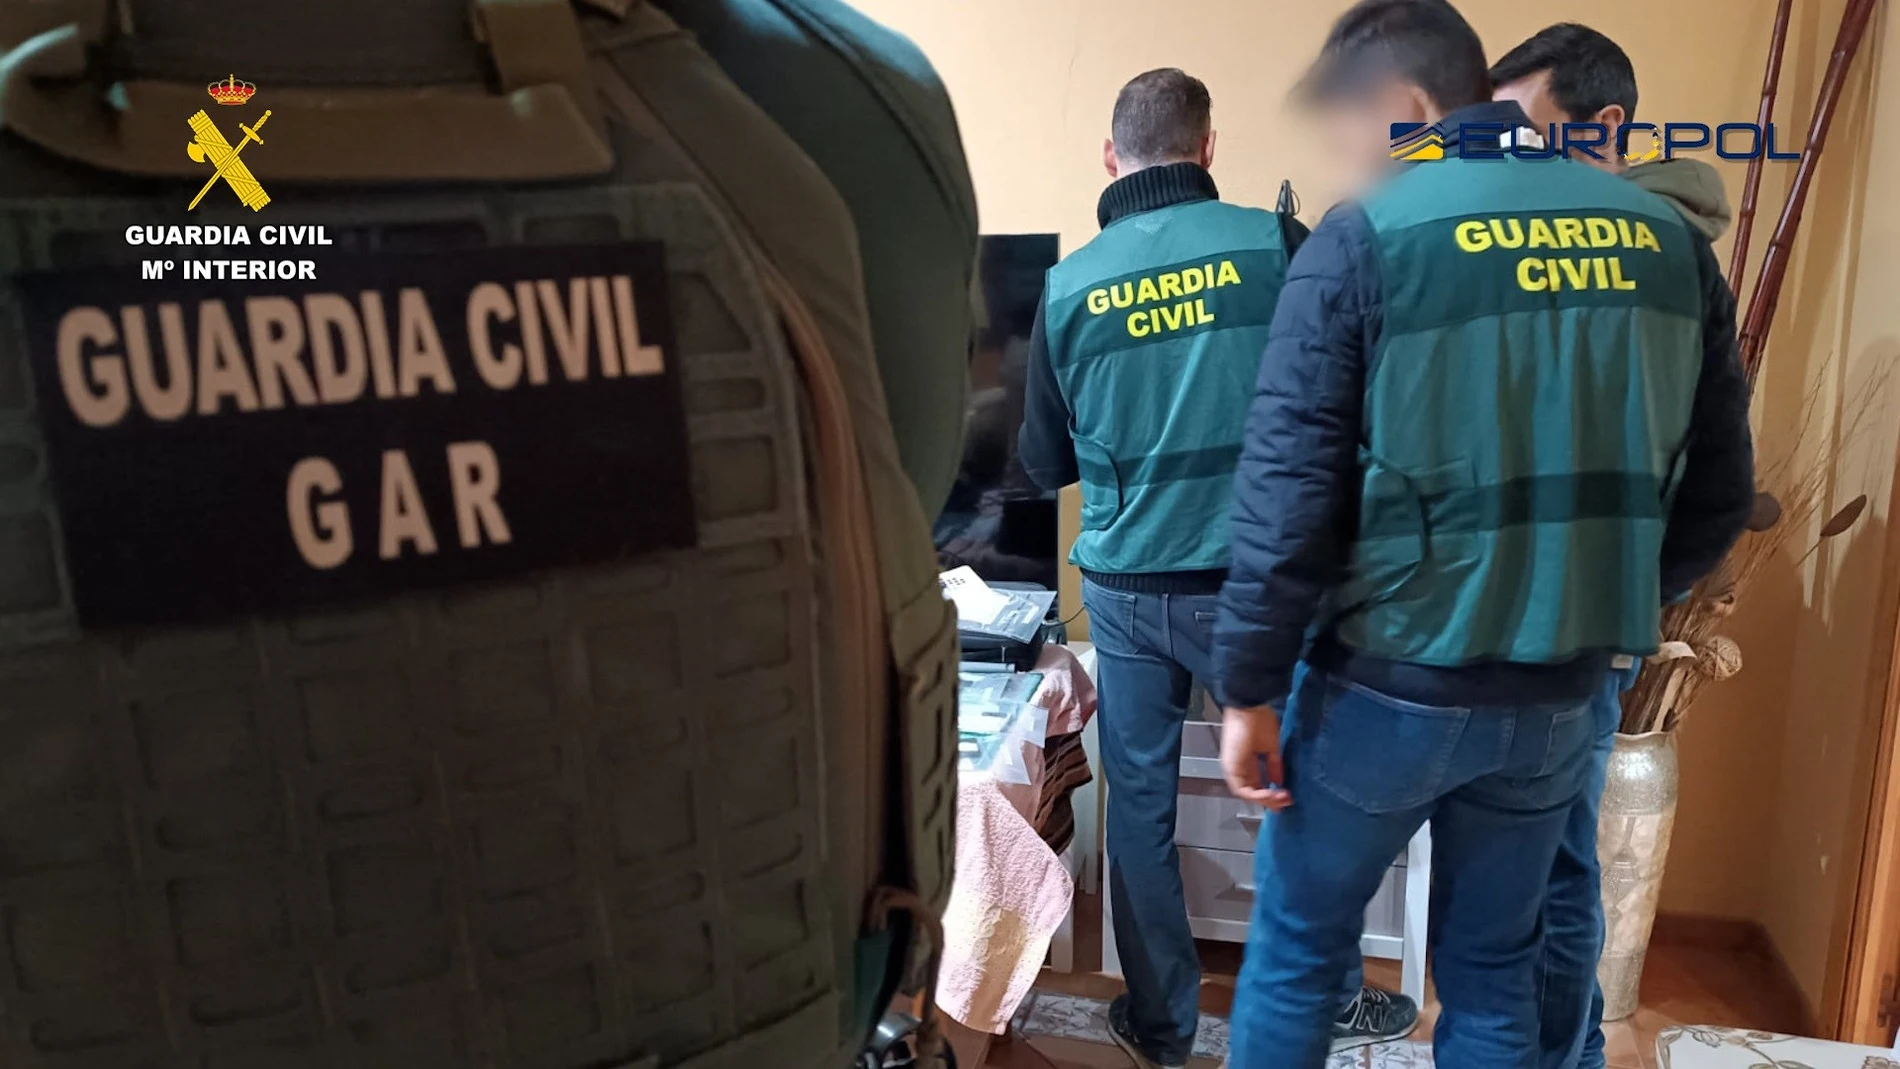 La Guardia Civil detiene en Sevilla a un acusado de difundir en redes propaganda yihadista a favor de Daesh